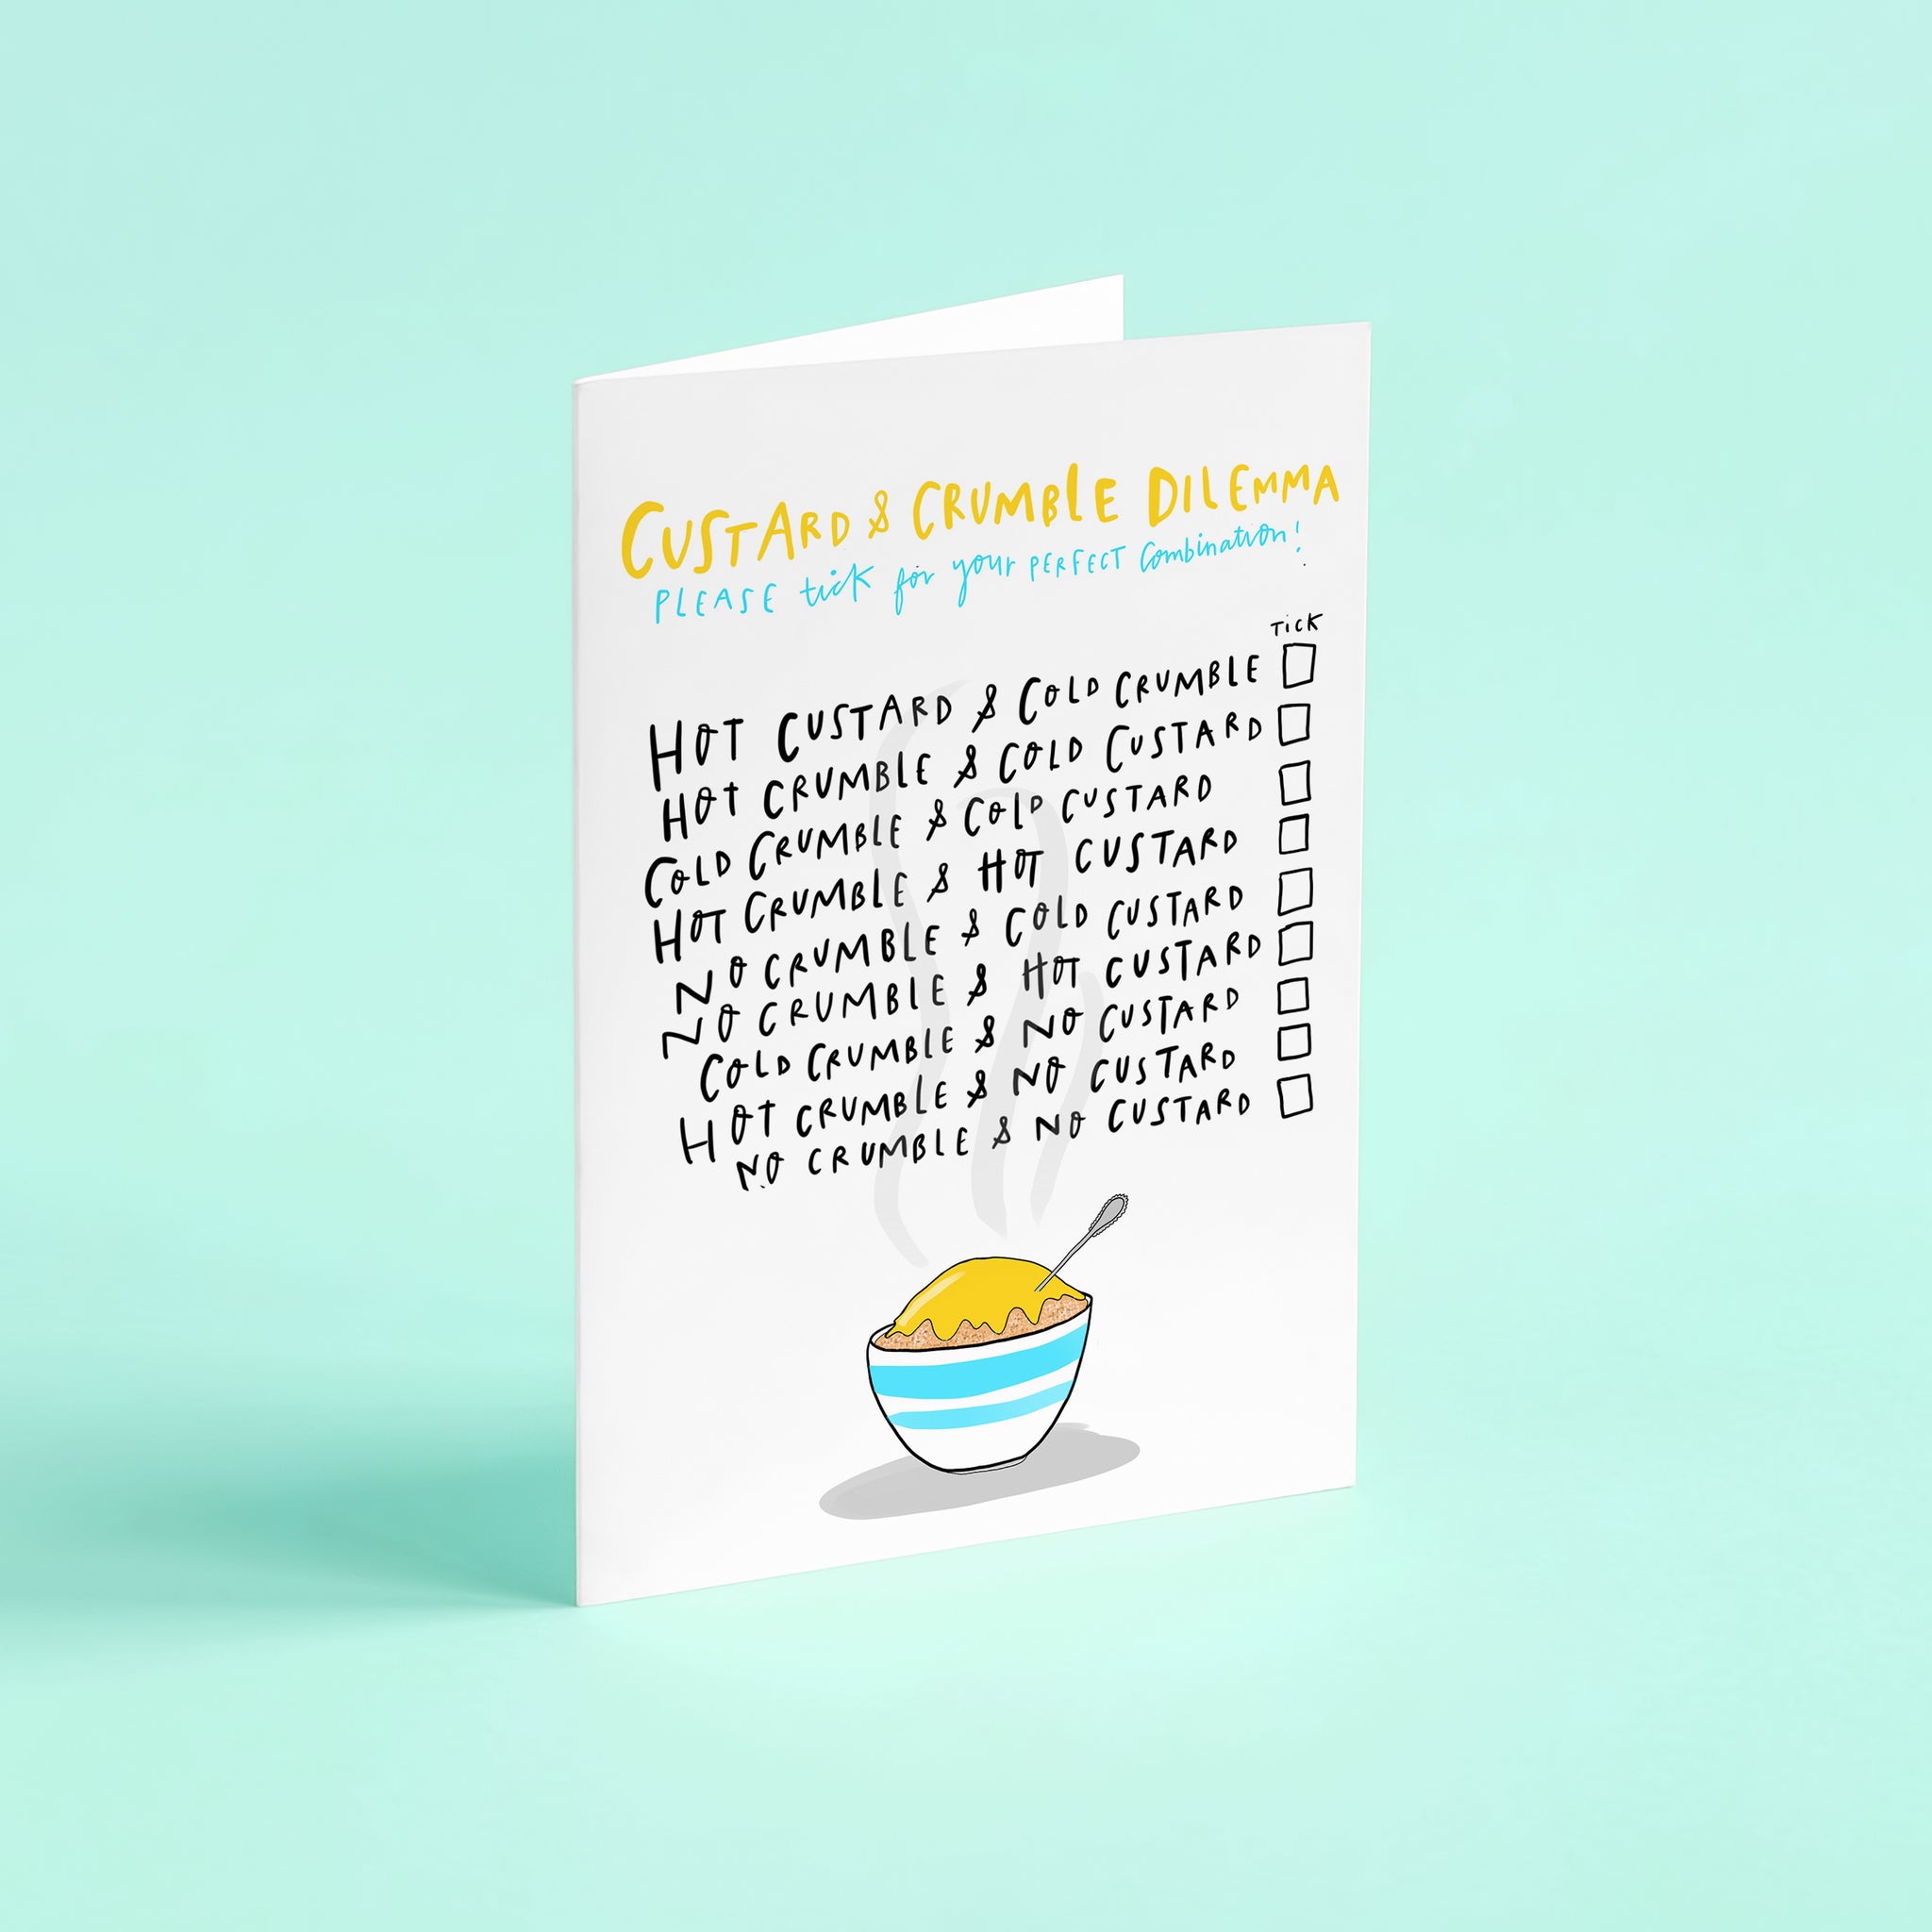 Custard crumble dilemma card